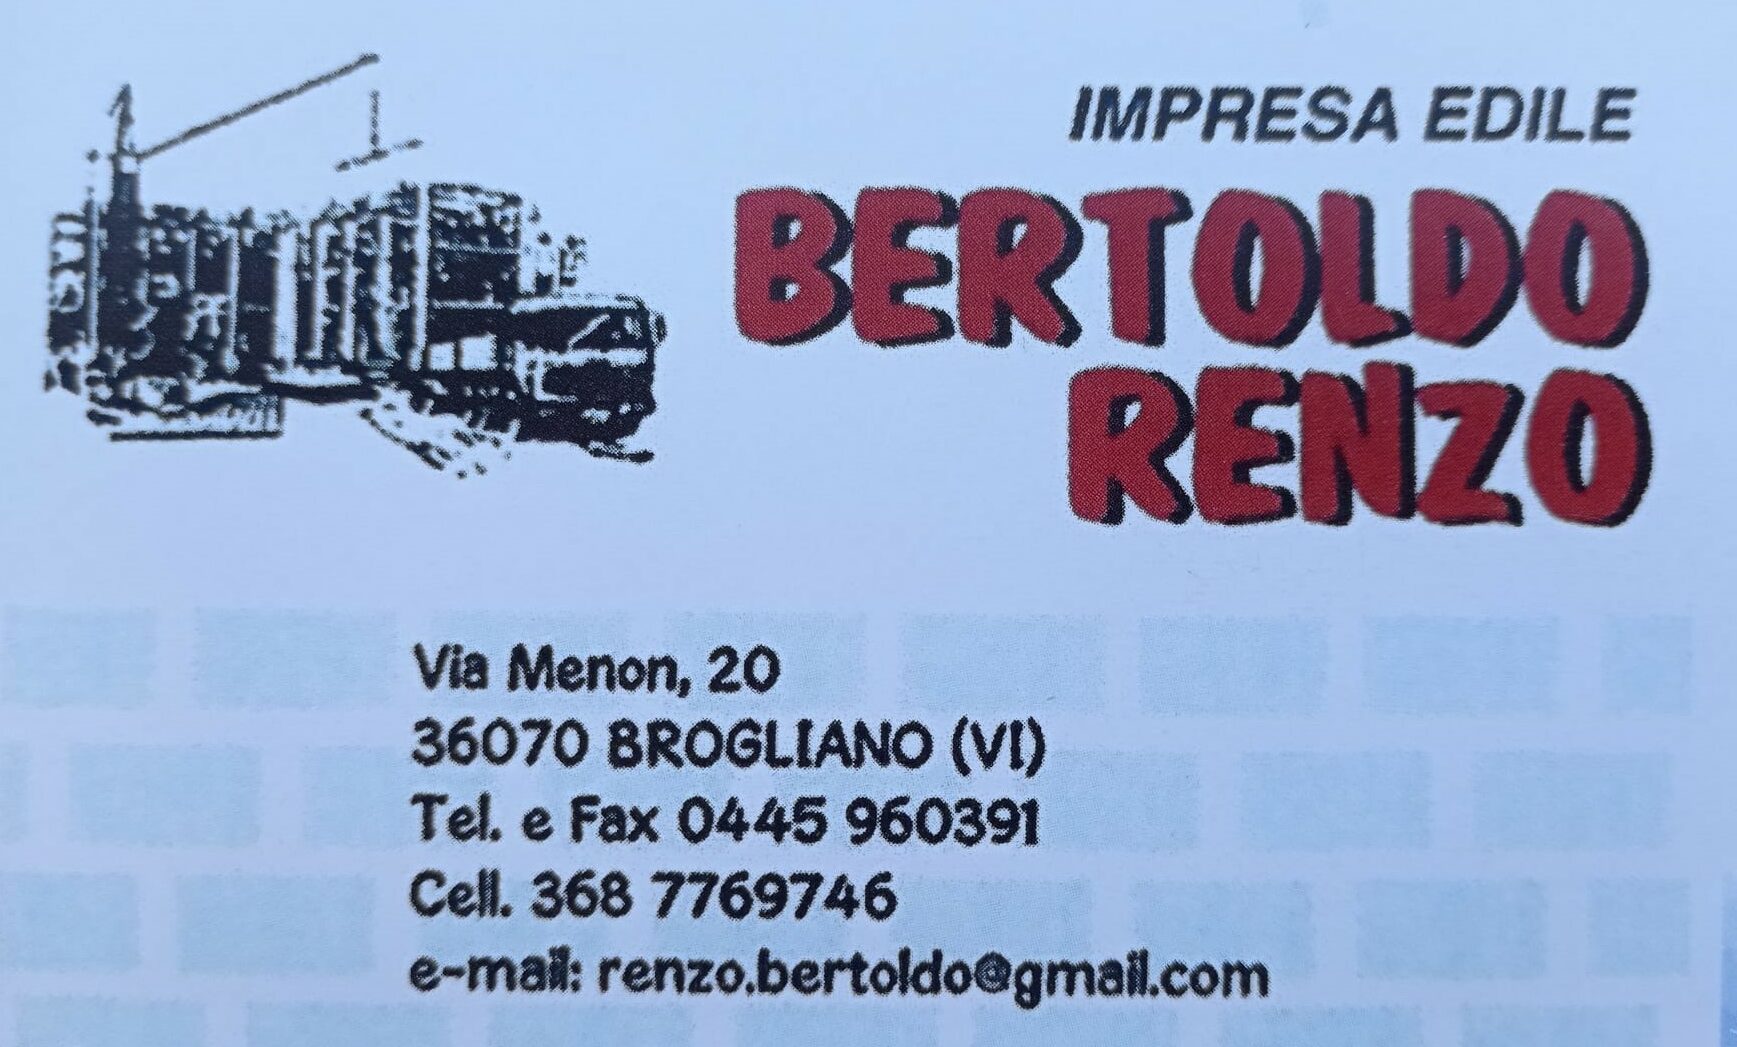 RENZO BERTOLDO